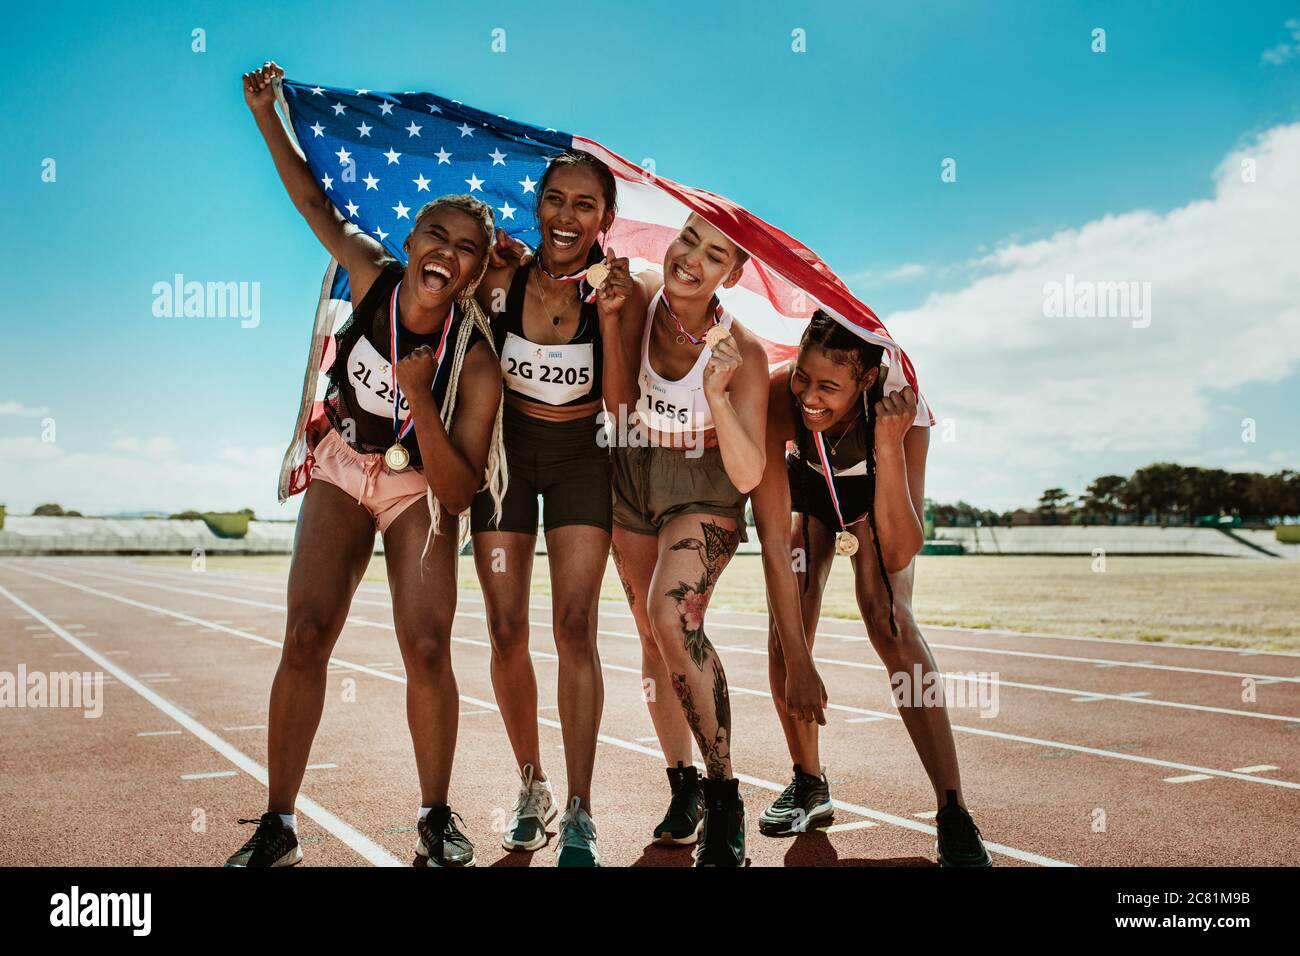 Portrait de la jeune équipe d'athlètes féminins profitant de la victoire. Groupe de coureurs divers avec des médailles célébrant le succès en tenant un drapeau des États-Unis sur la piste de course. Banque D'Images